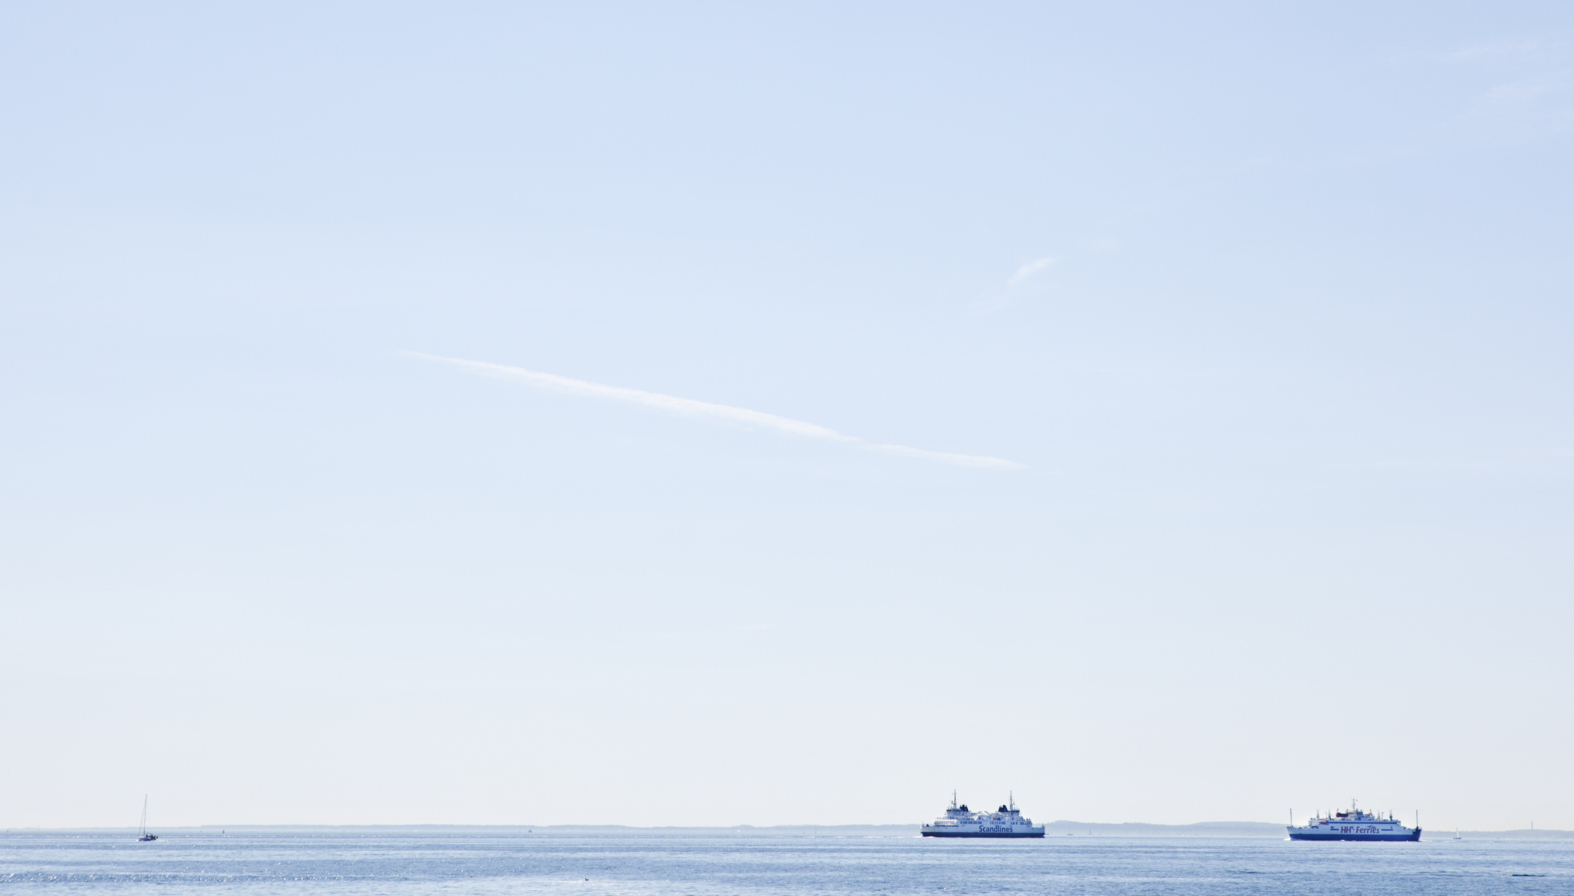 Sommar på Öresund, två fartyg i vackert väder.